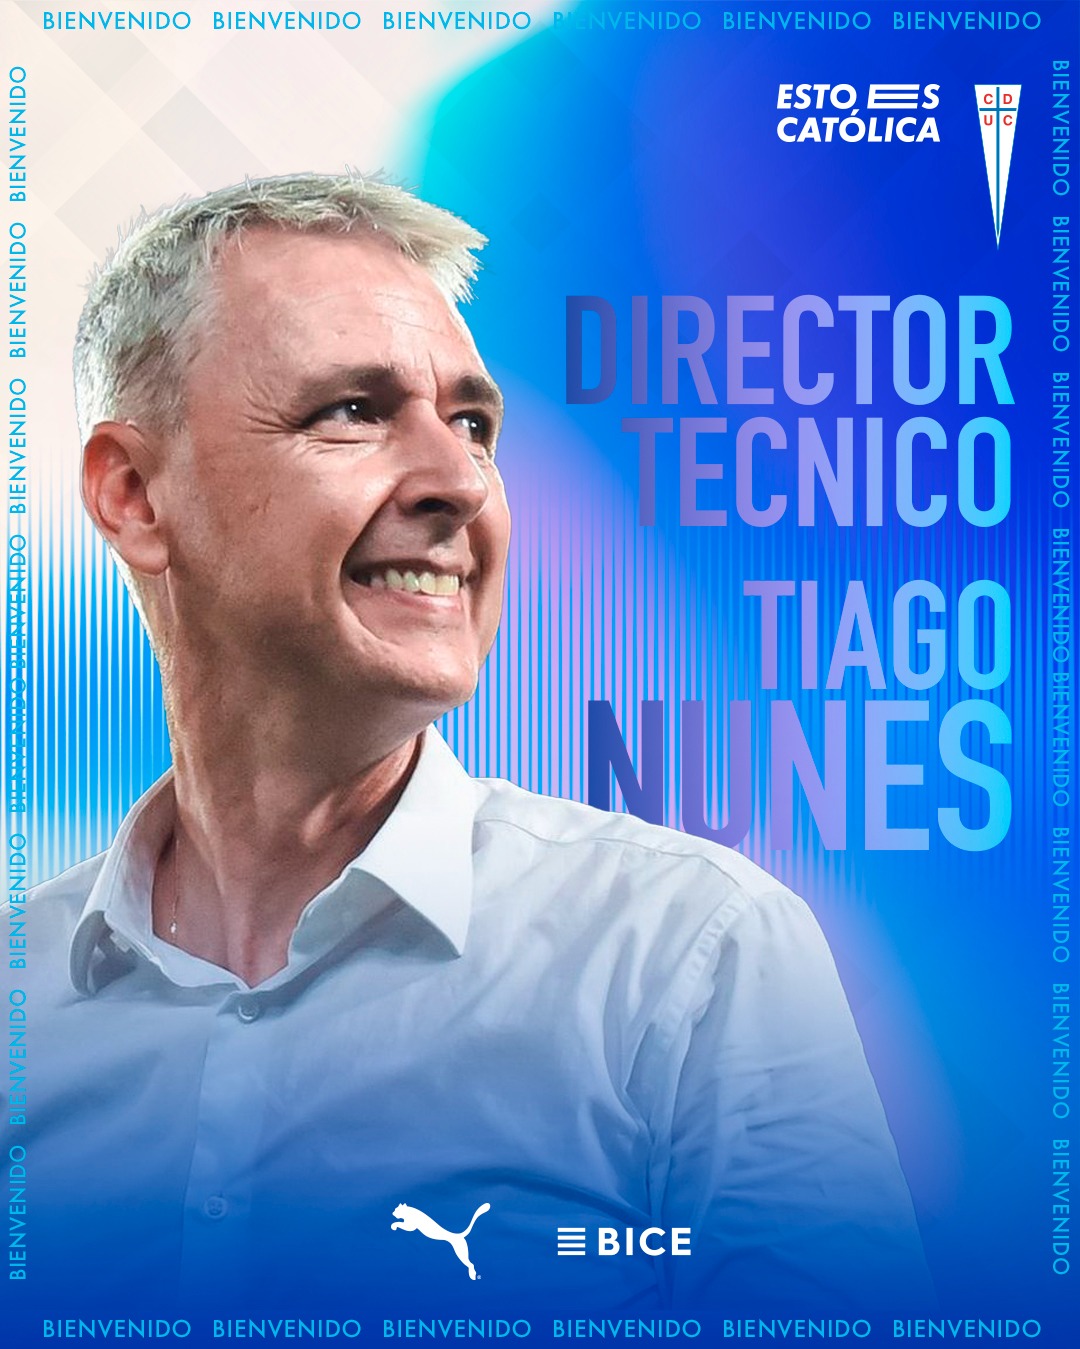 Tiago Nunes es el nuevo entrenador de la Universidad Católica. | Fuente: @Cruzados